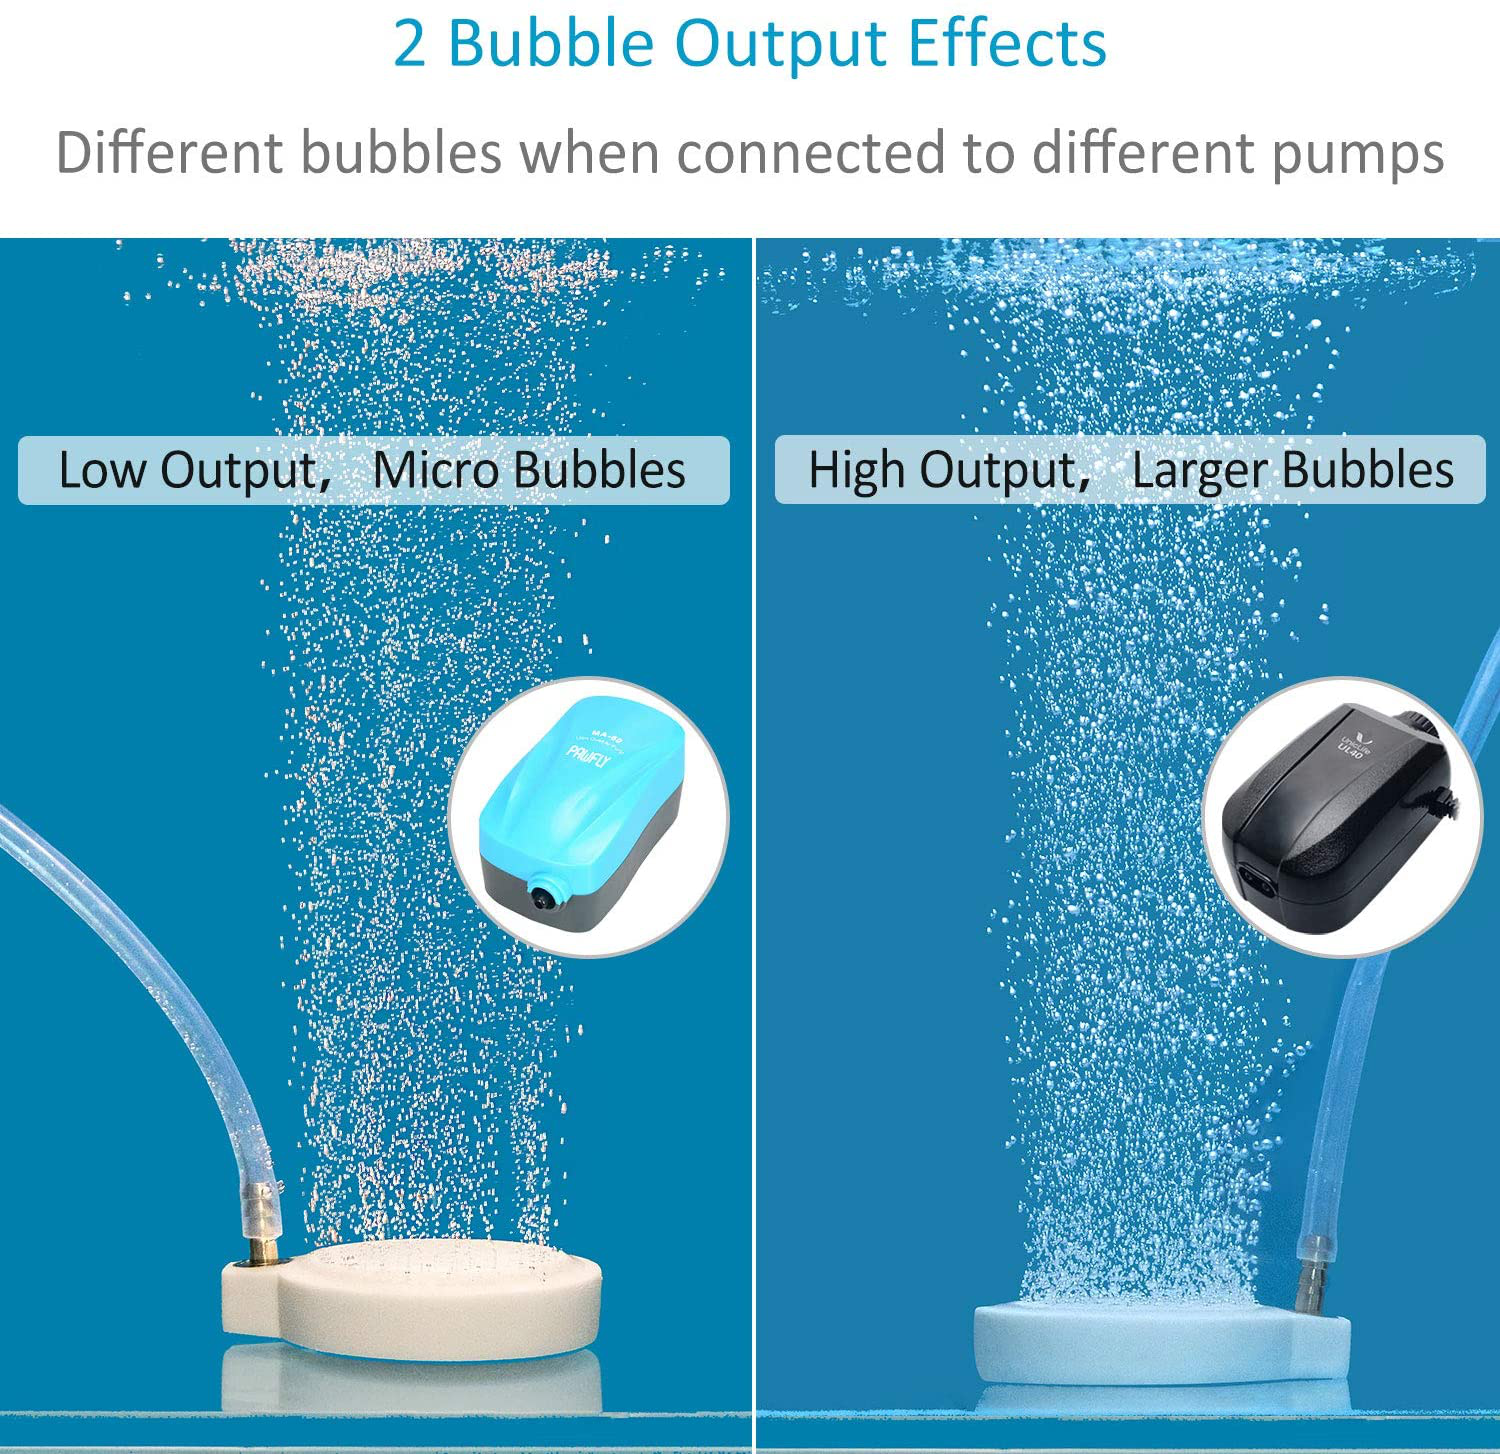 Pawfly 2 Inch Fine Bubble Air Diffuser Air Stone Disc for Small Air Pump Aquarium Fish Tank